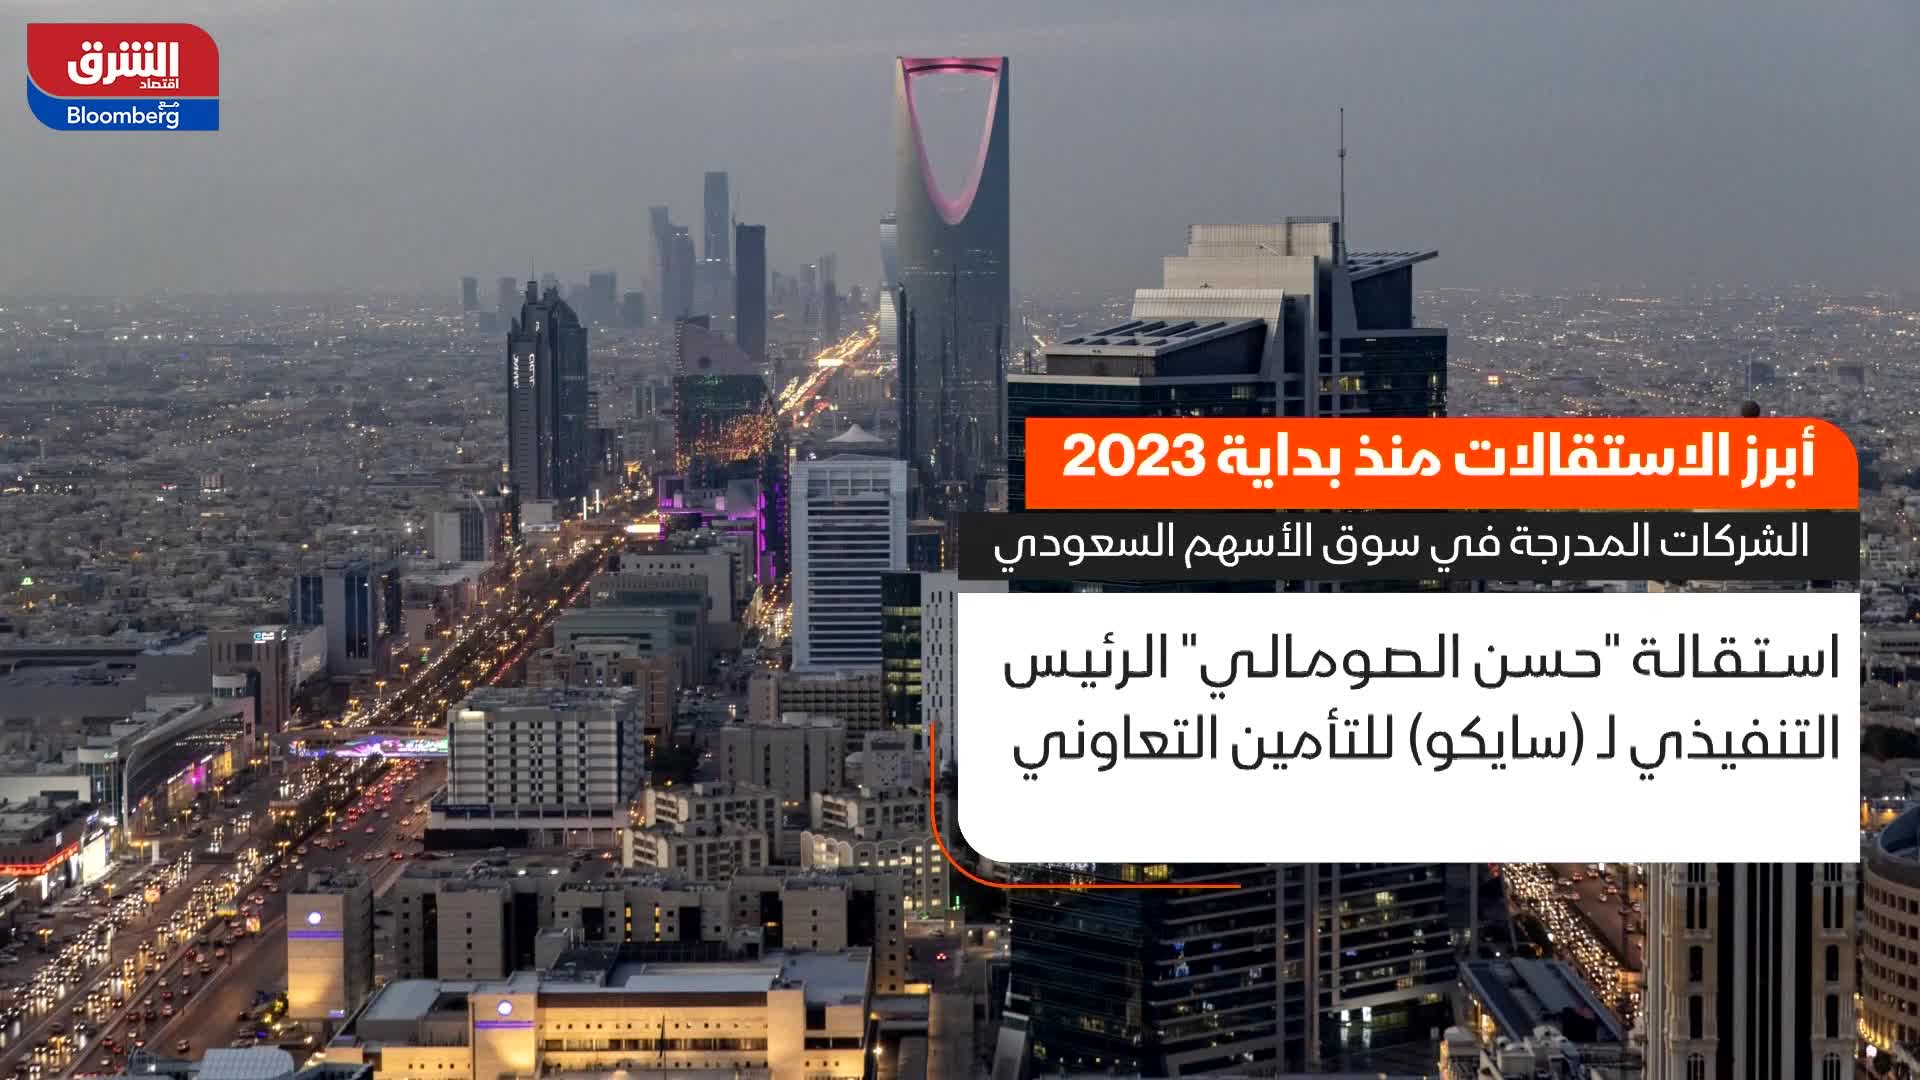 أبرز الاستقالات بالشركات المدرجة في سوق الأسهم السعودي منذ بداية 2023